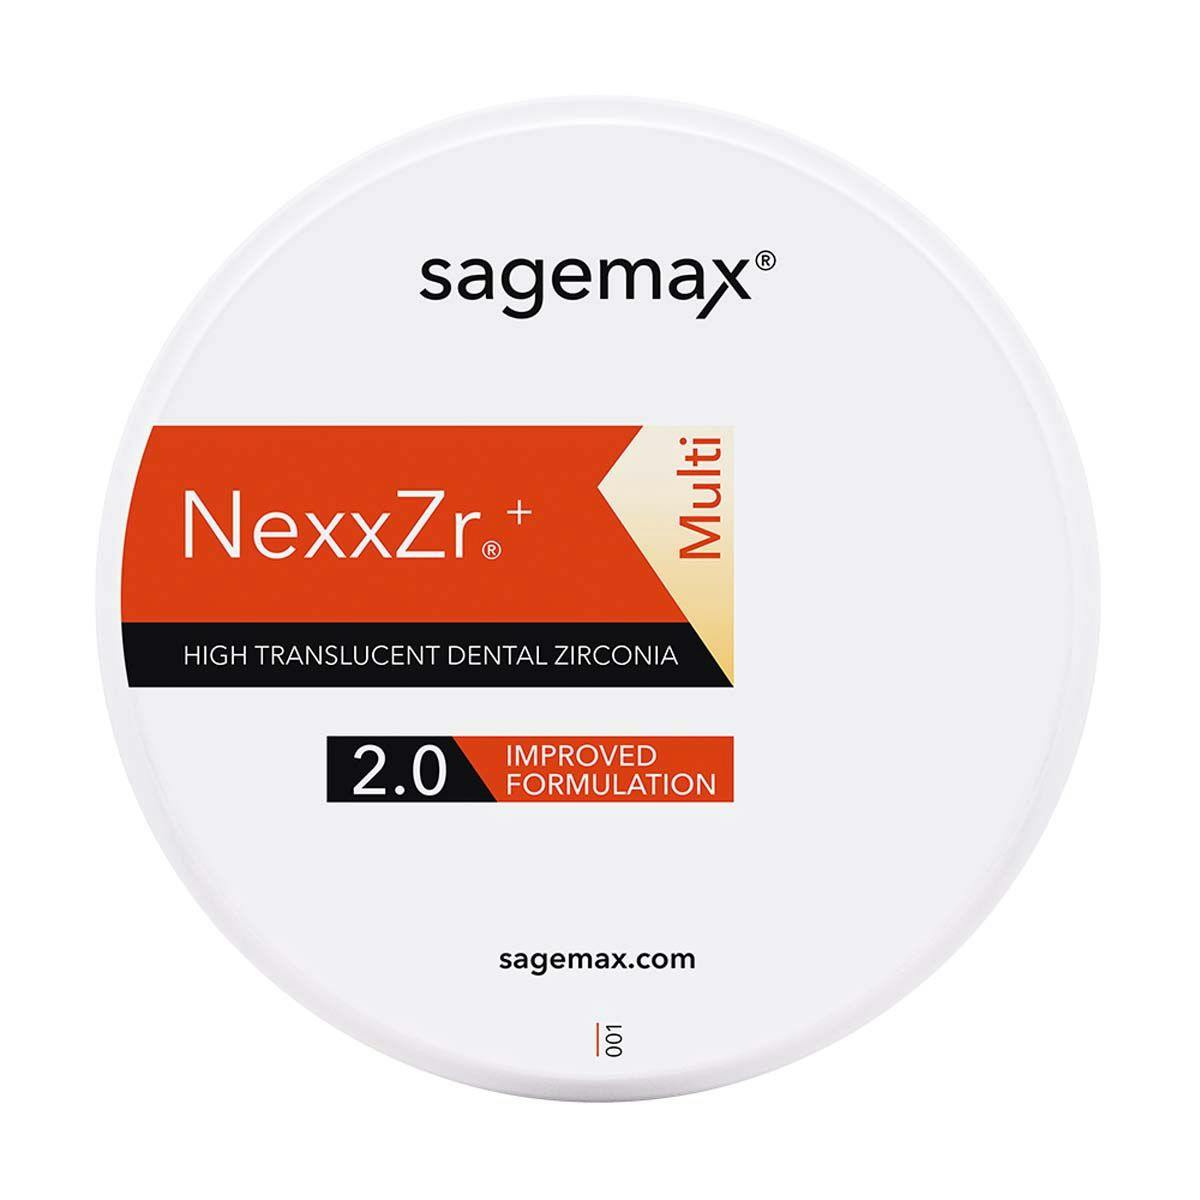 Sagemax Launches NexxZr+ Multi 2.0 Disc. Image credit: © Sagemax Bioceramics, Inc.